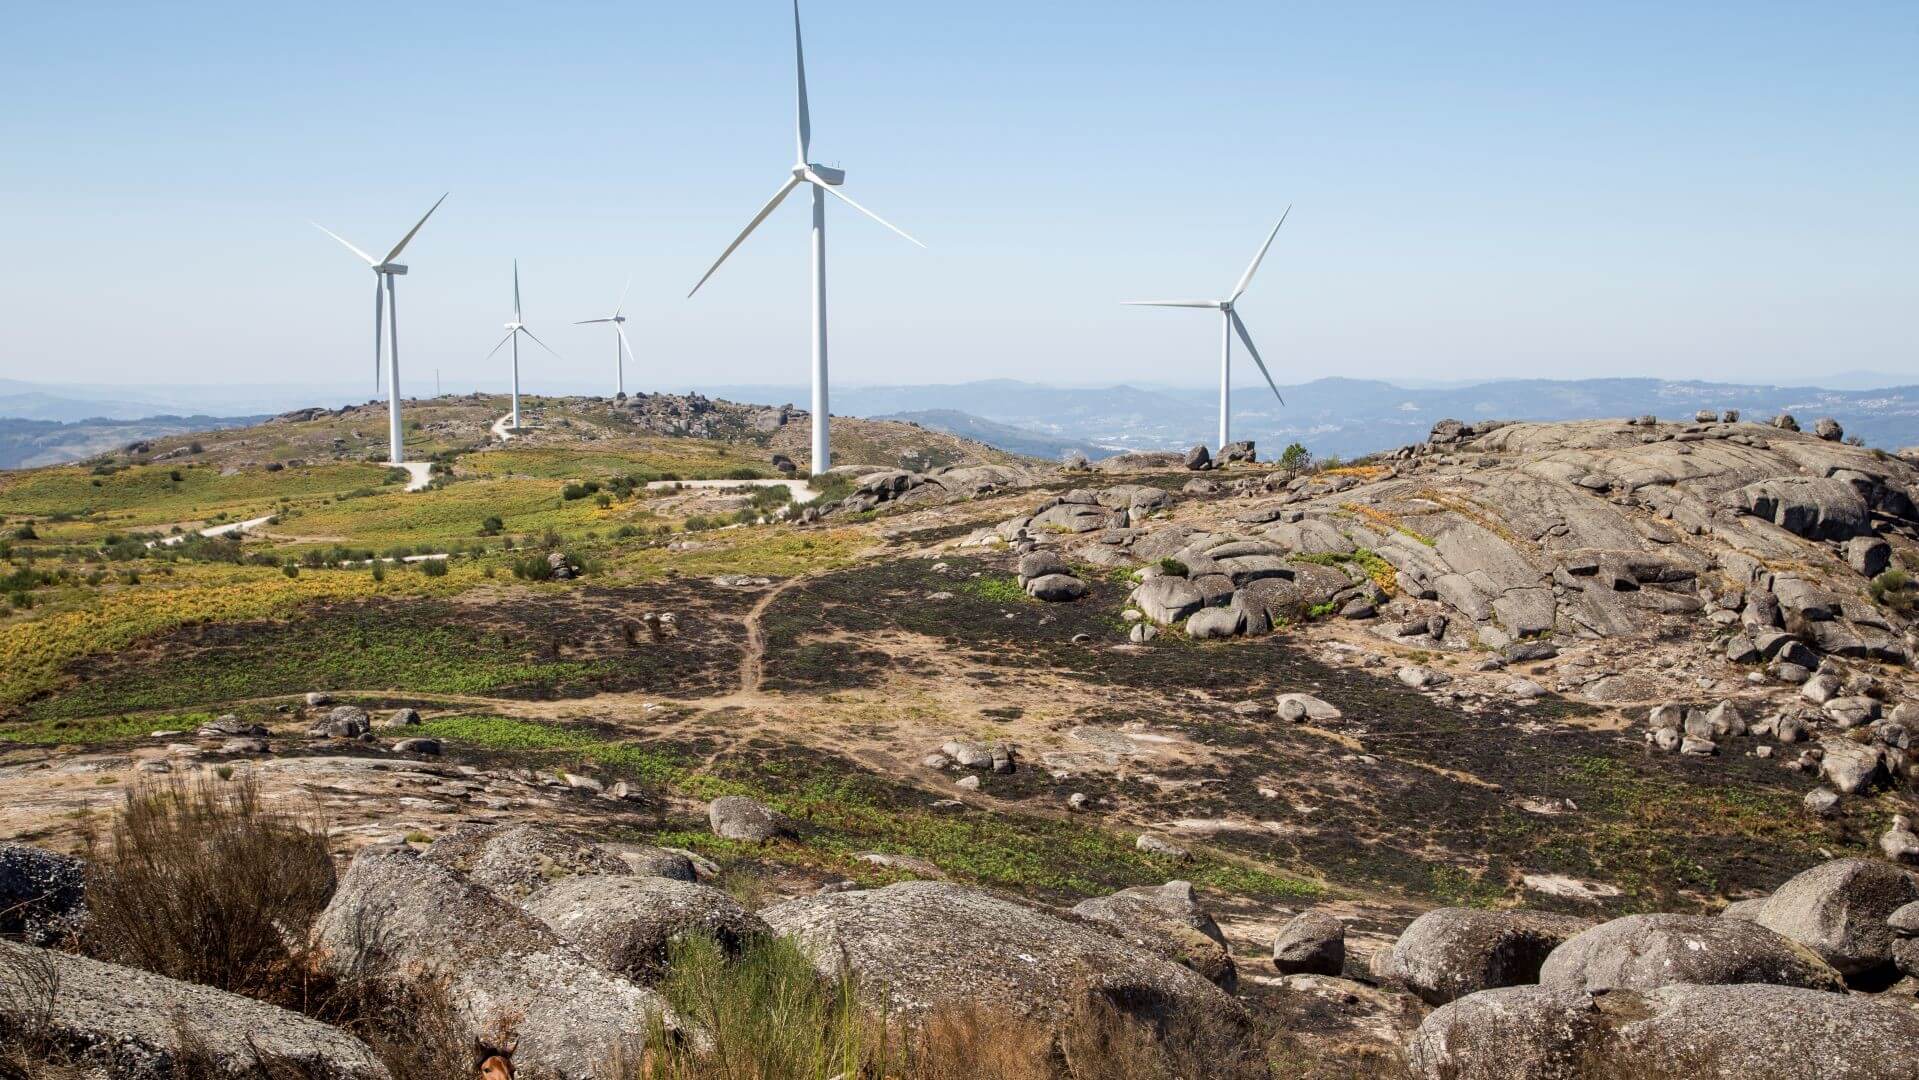 Terras Altas de Fafe wind farm, Portugal